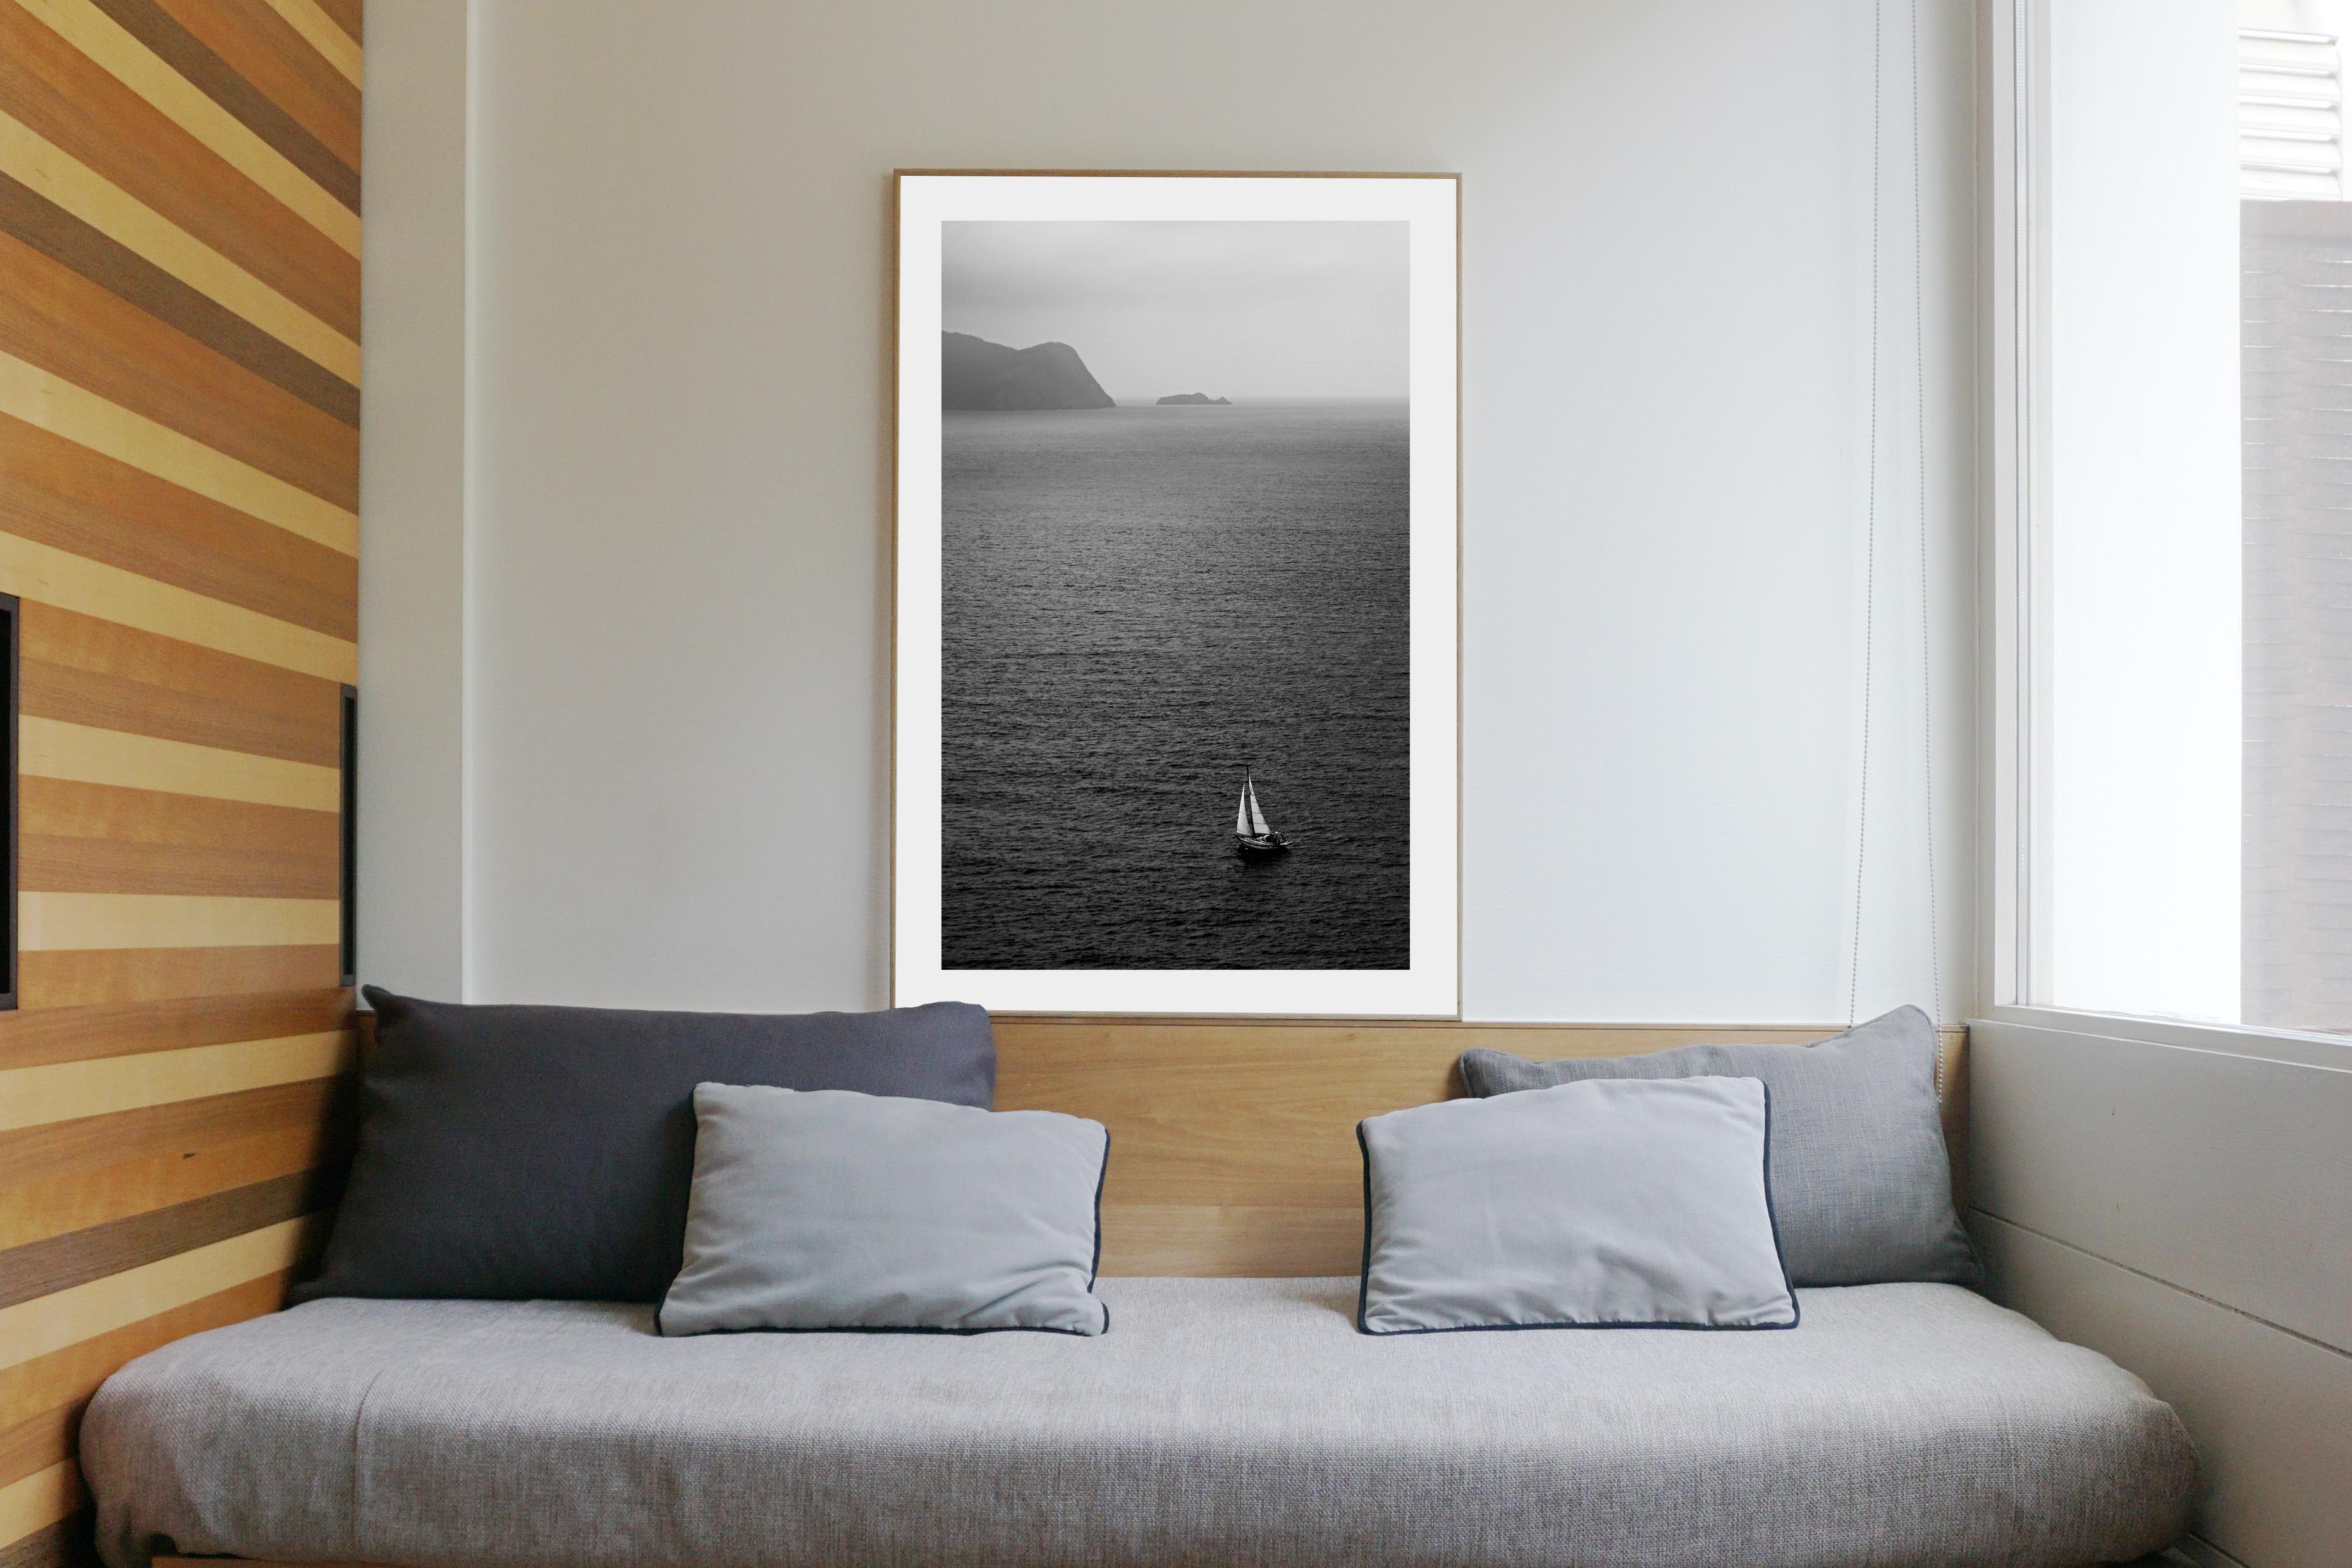  Voyage en voile Misty noir et blanc, paysage marin de la Régatta, côte méditerranéenne - Réalisme Photograph par Kind of Cyan